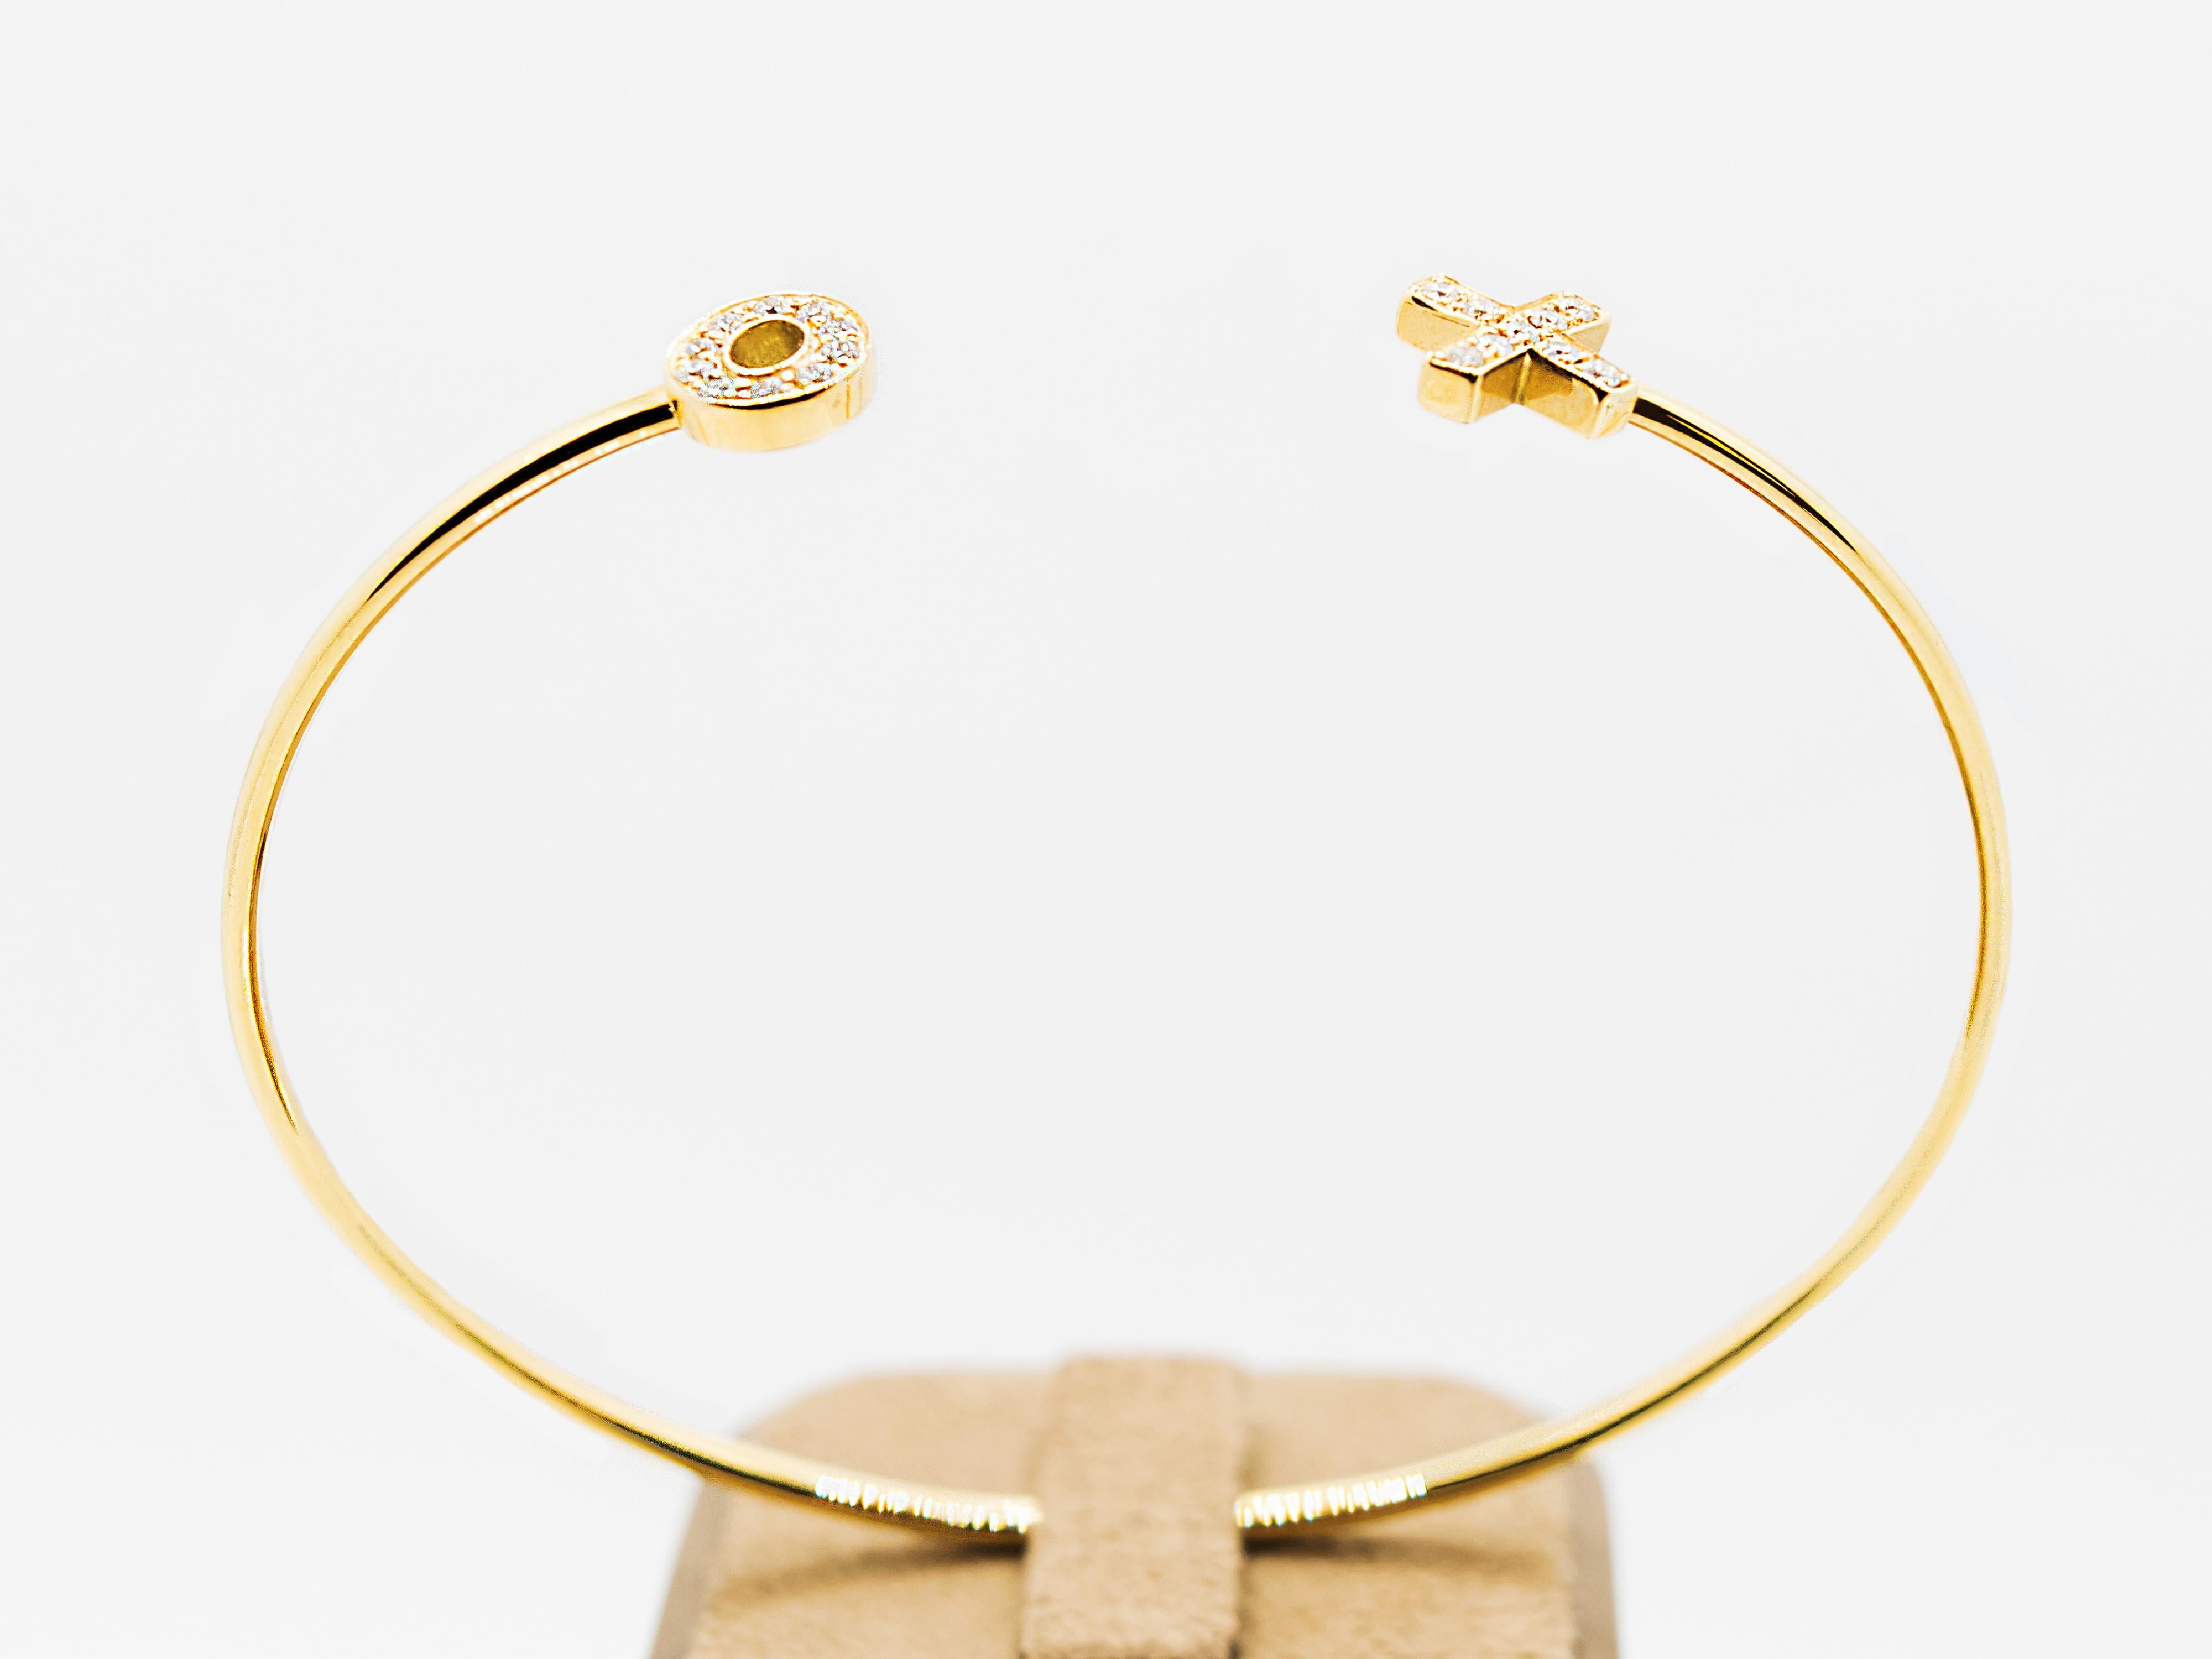 Un bracelet bangle très sophistiqué fabriqué en or jaune 18 Kt.
Le fil dont il est composé a un diamètre de 2 mm qui le rend solide et extrêmement sûr à porter.
Le motif X O est agrémenté de 0,14 ct de diamants blancs.
Le poids total est de gr